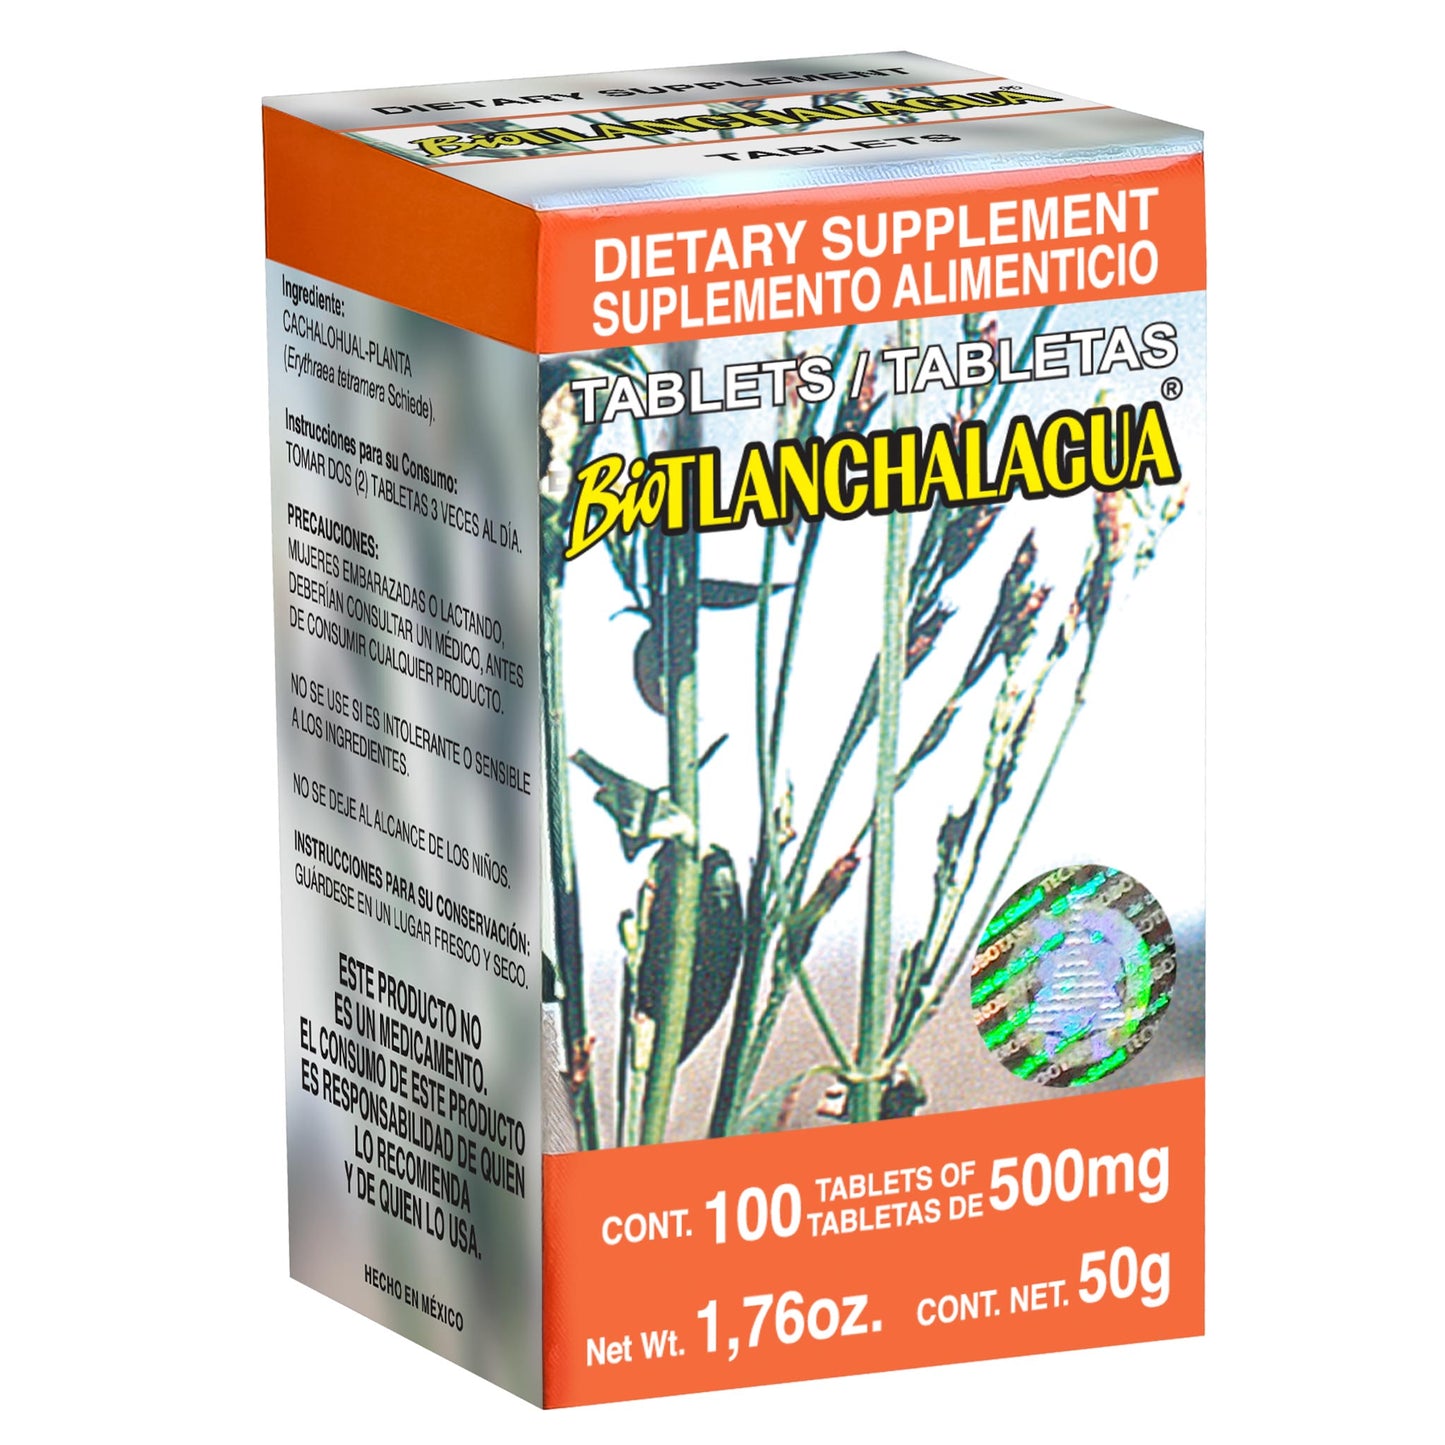 BIOTLANCHALAHUA ® 100 tabletas